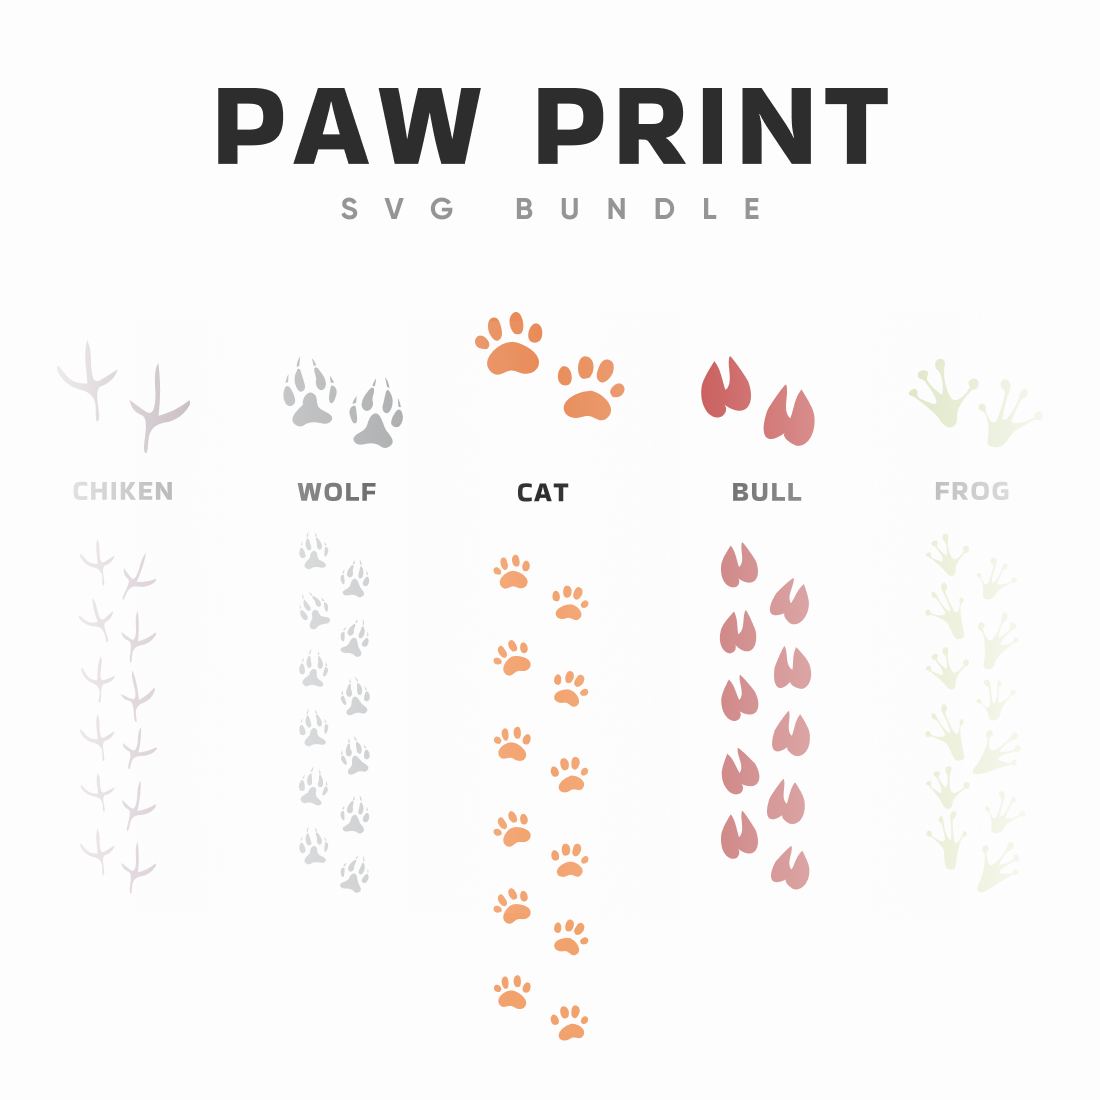 Paw Print SVG Bundle